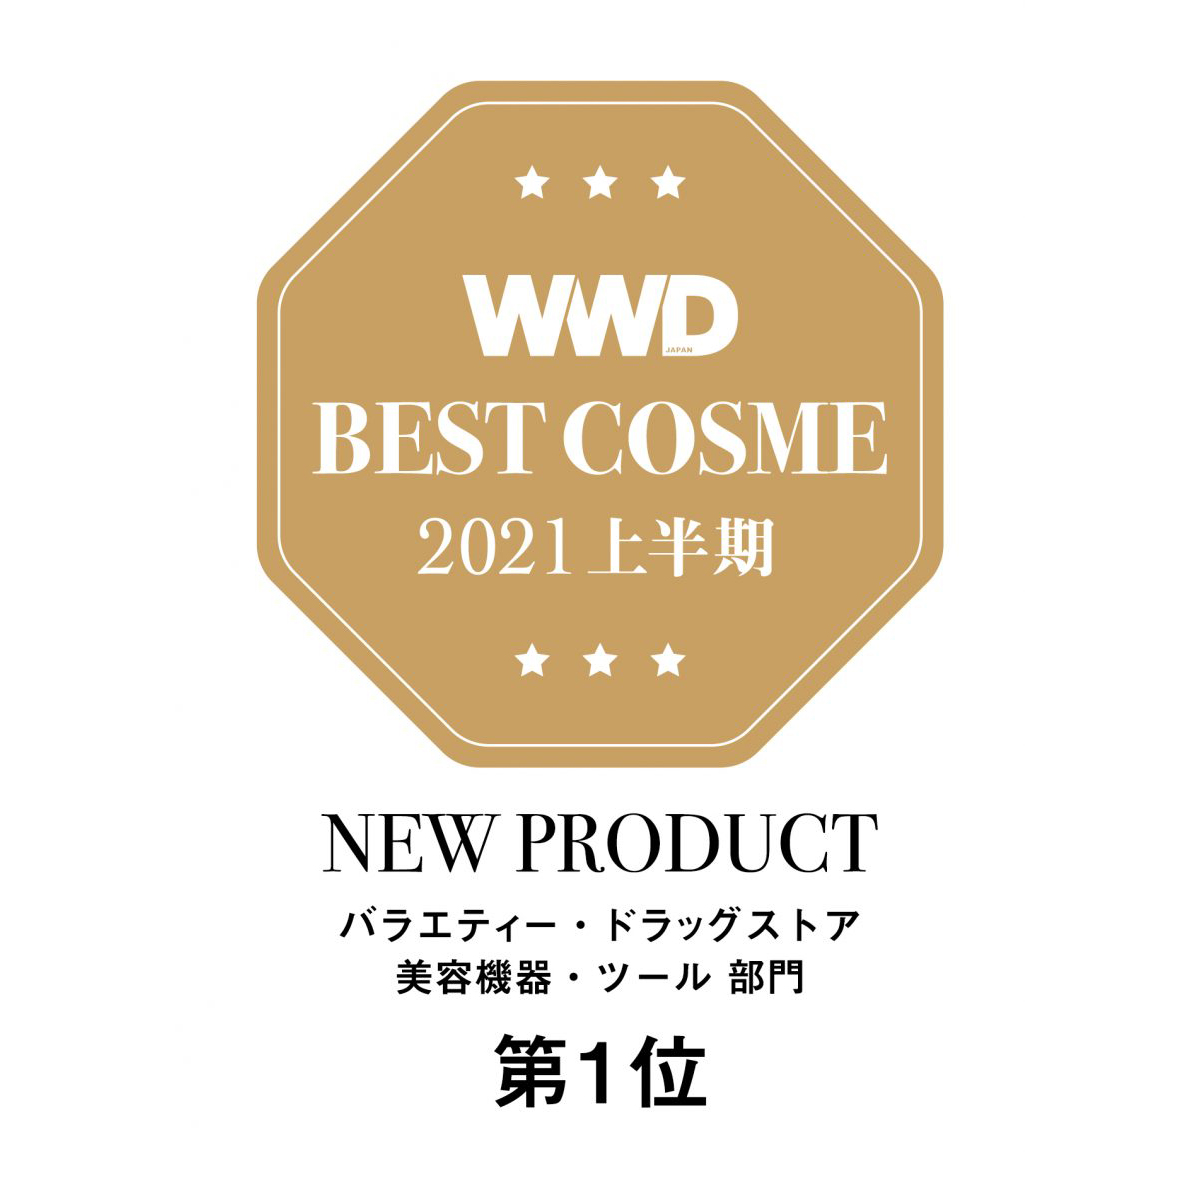 エイジングケア*ブランド「エフェクティム」が関西初出店 “パーソナライズ美容機器”をそろえる （PR）- WWDJAPAN